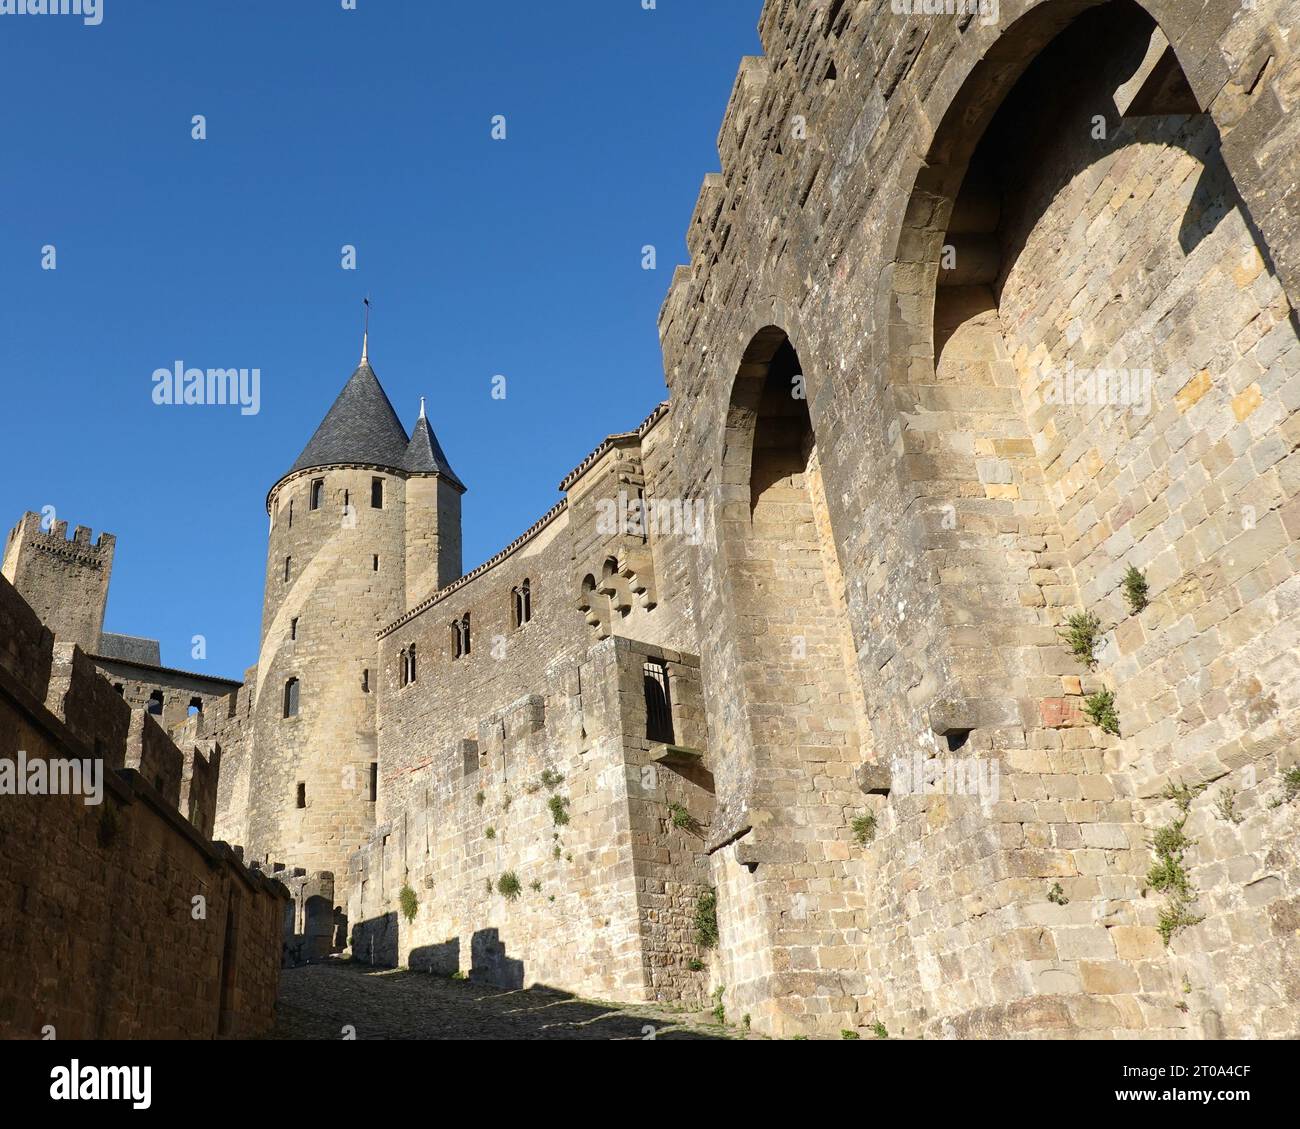 'Carcassonne France', 'Cité fortifiée', 'département de l'Aude', 'région Occitanie', 'Cité médiévale', Citadelle Cité de Carcassonne, murailles médiévales Banque D'Images